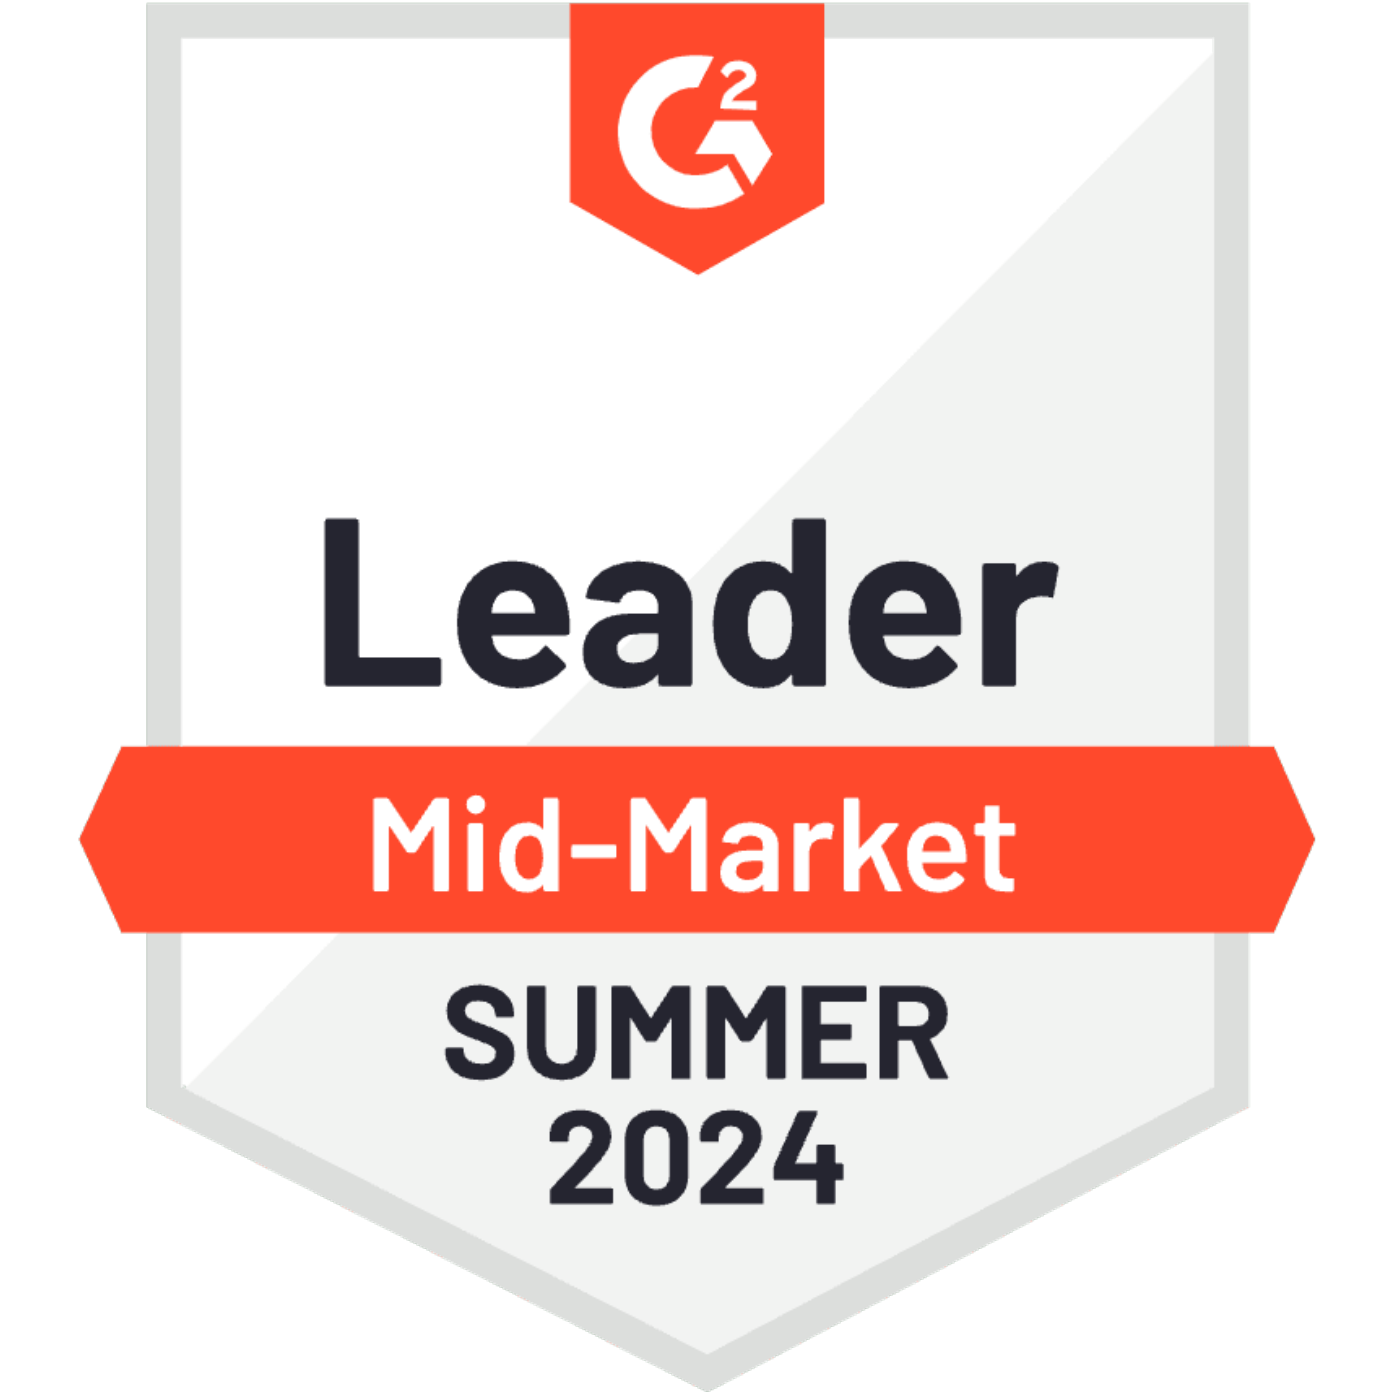 G2 Leader Mid Market Summer 2024